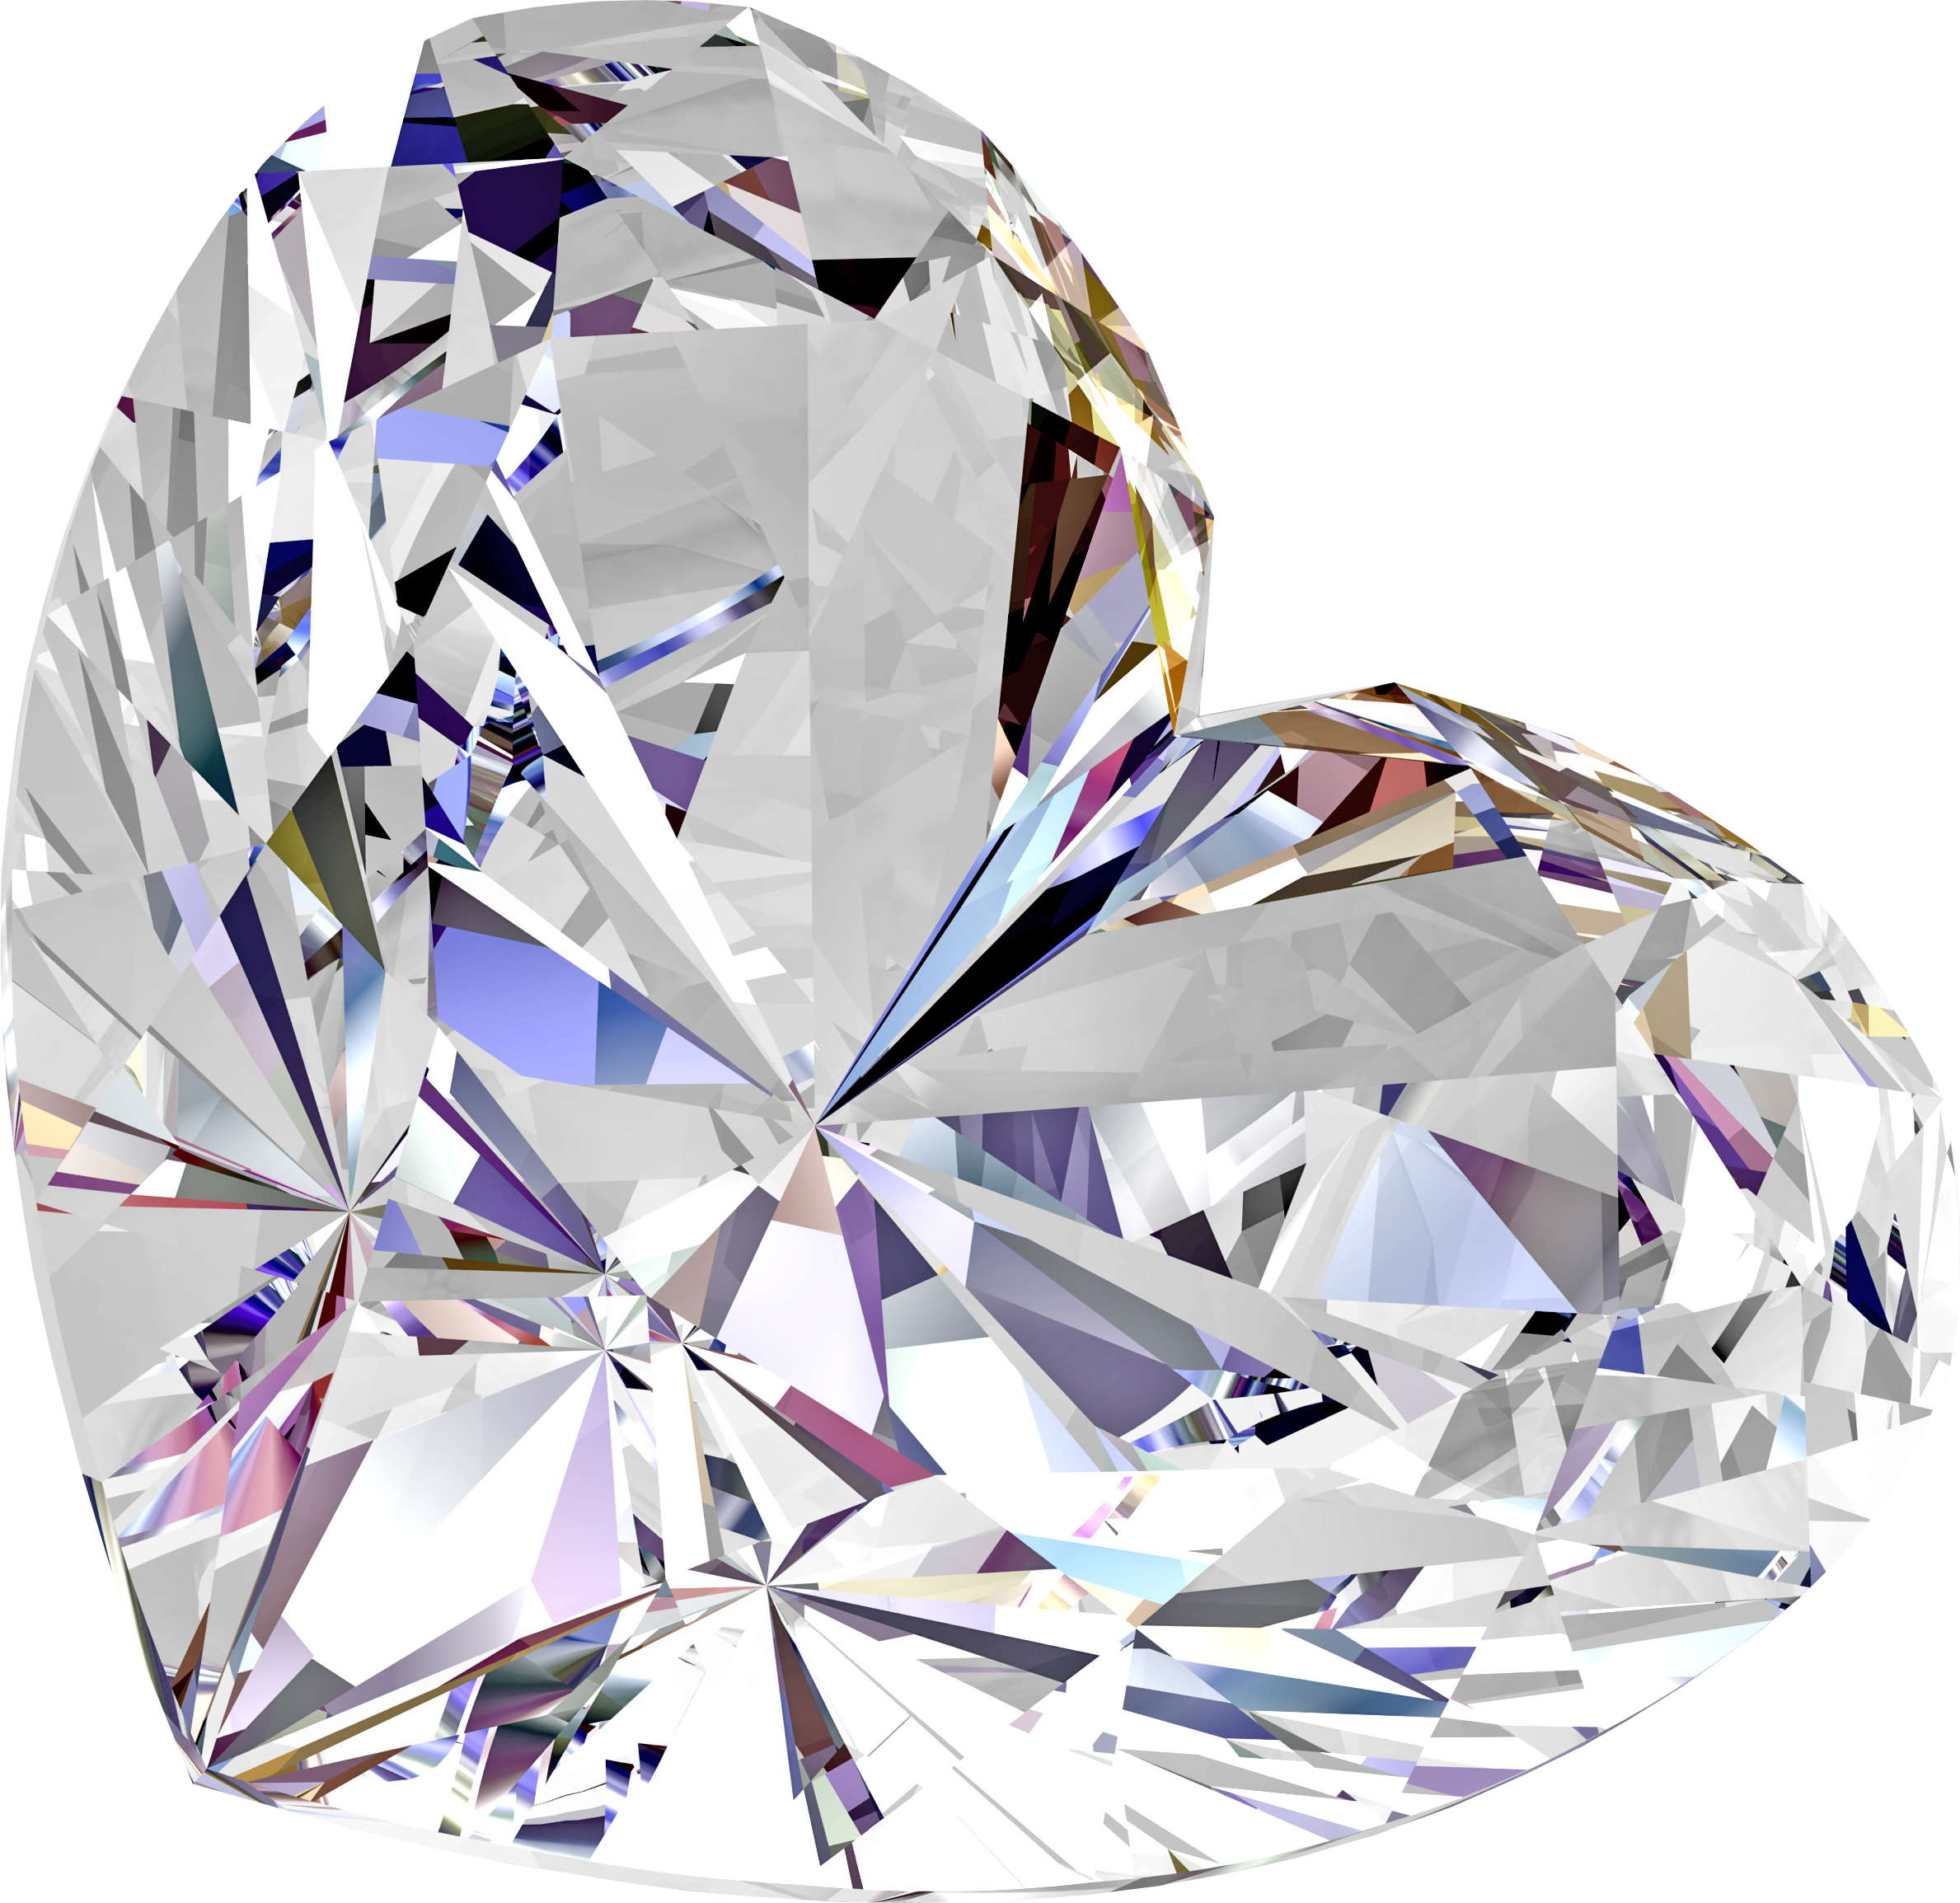 Diamante em forma de coração